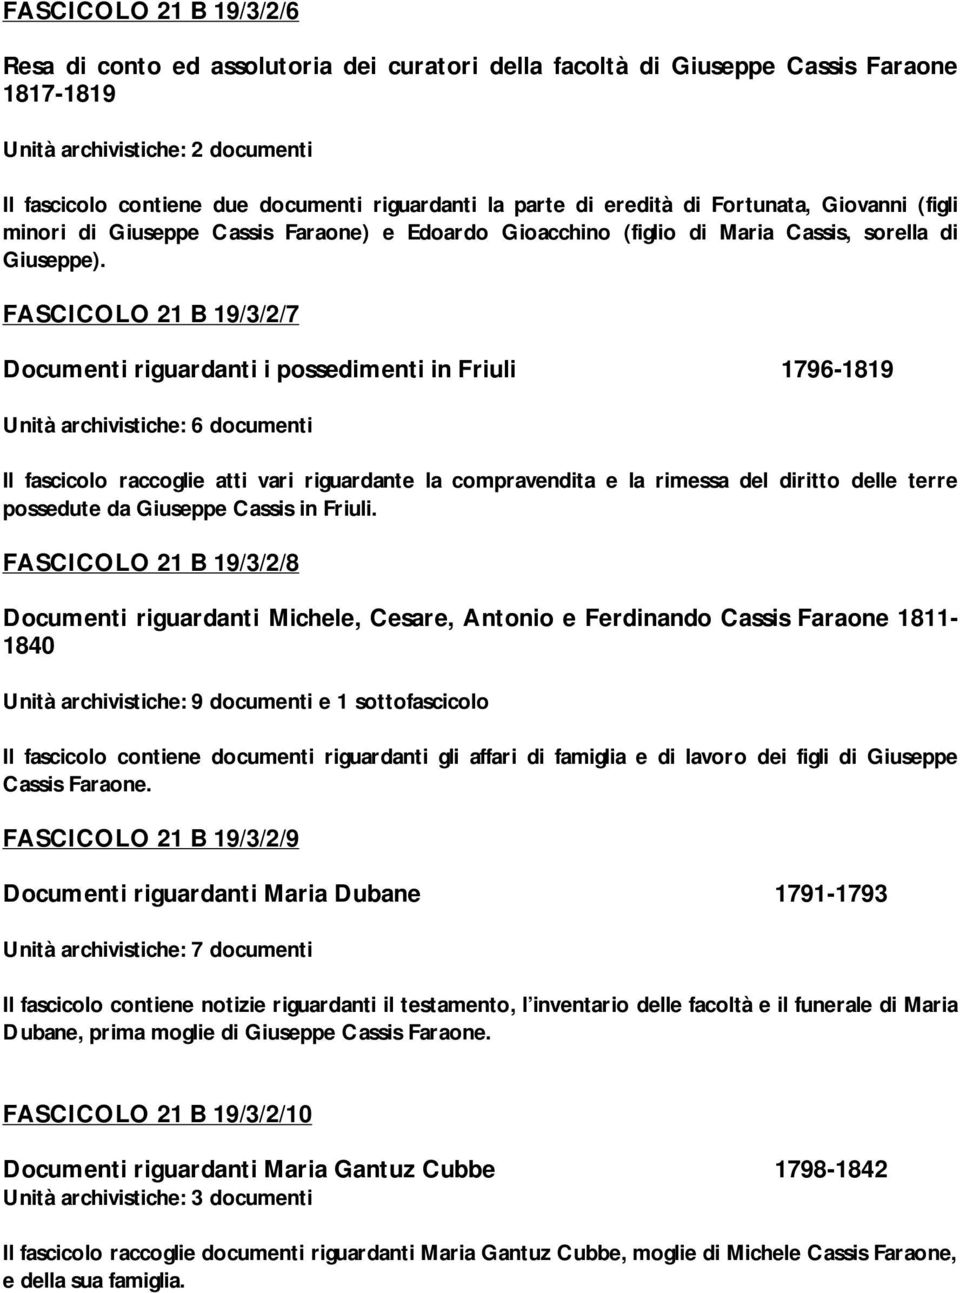 FASCICOLO 21 B 19/3/2/7 Documenti riguardanti i possedimenti in Friuli 1796-1819 Unità archivistiche: 6 documenti Il fascicolo raccoglie atti vari riguardante la compravendita e la rimessa del